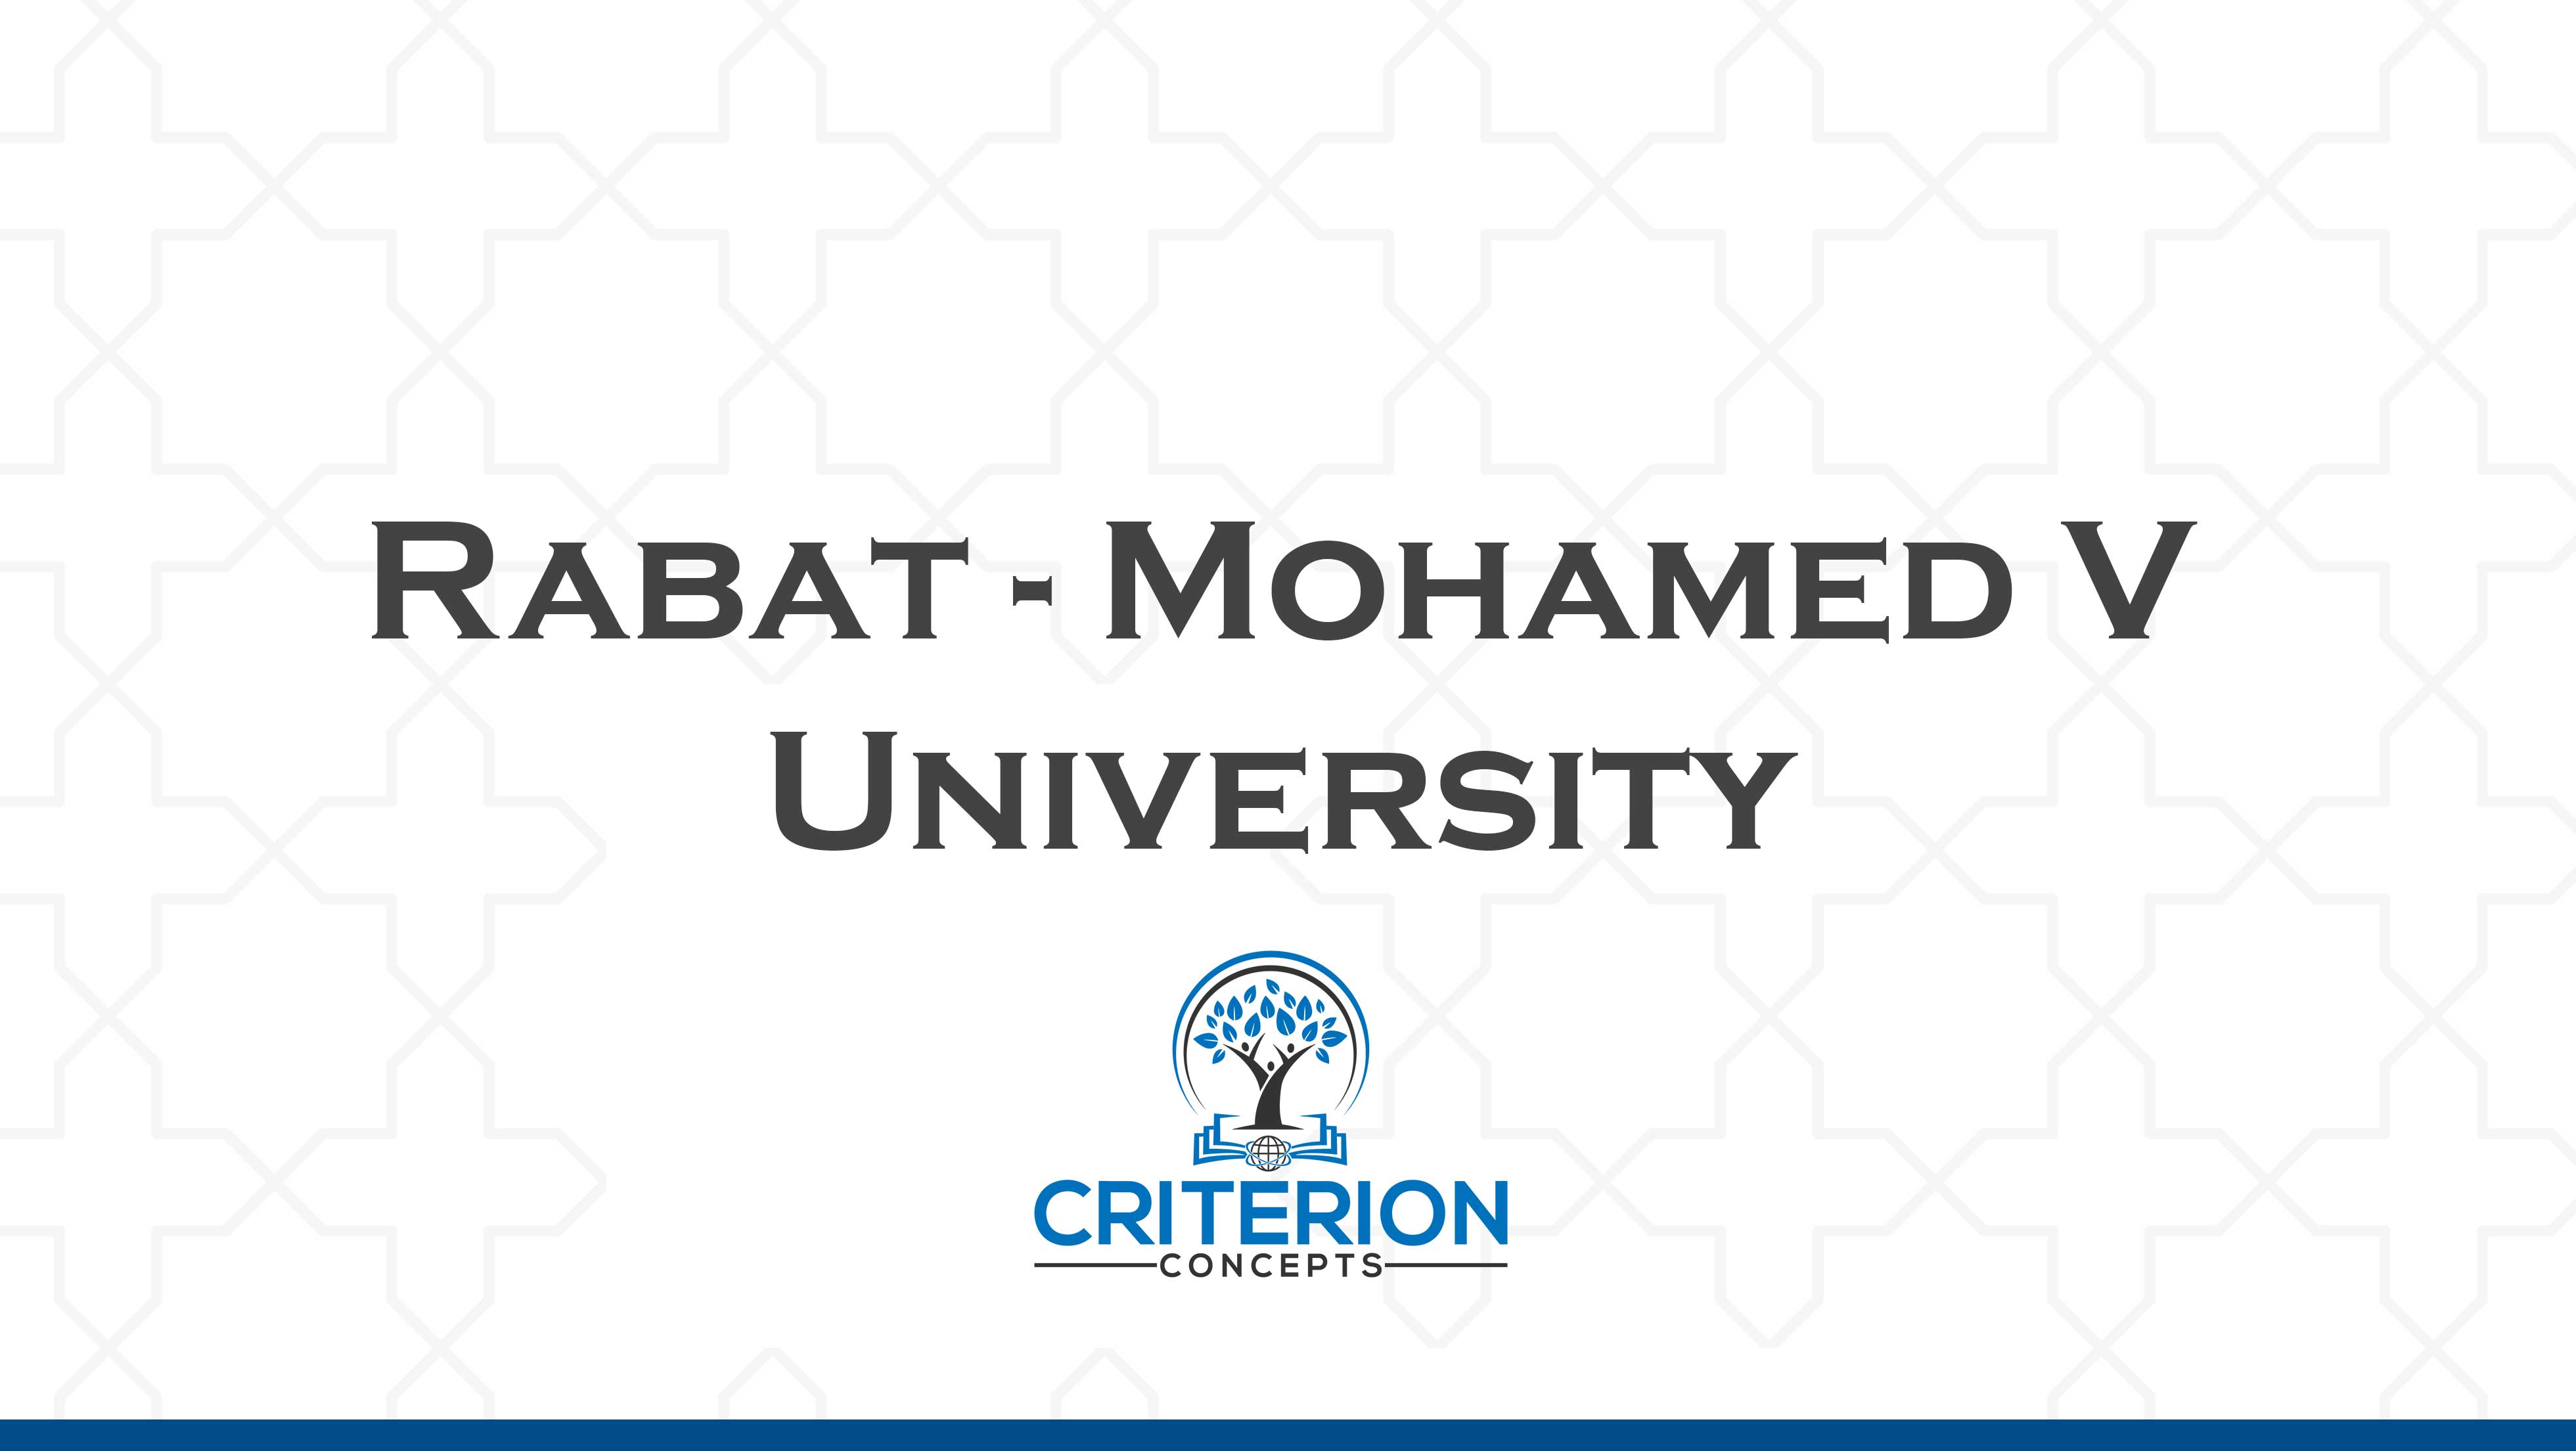 Rabat - Mohamed V University